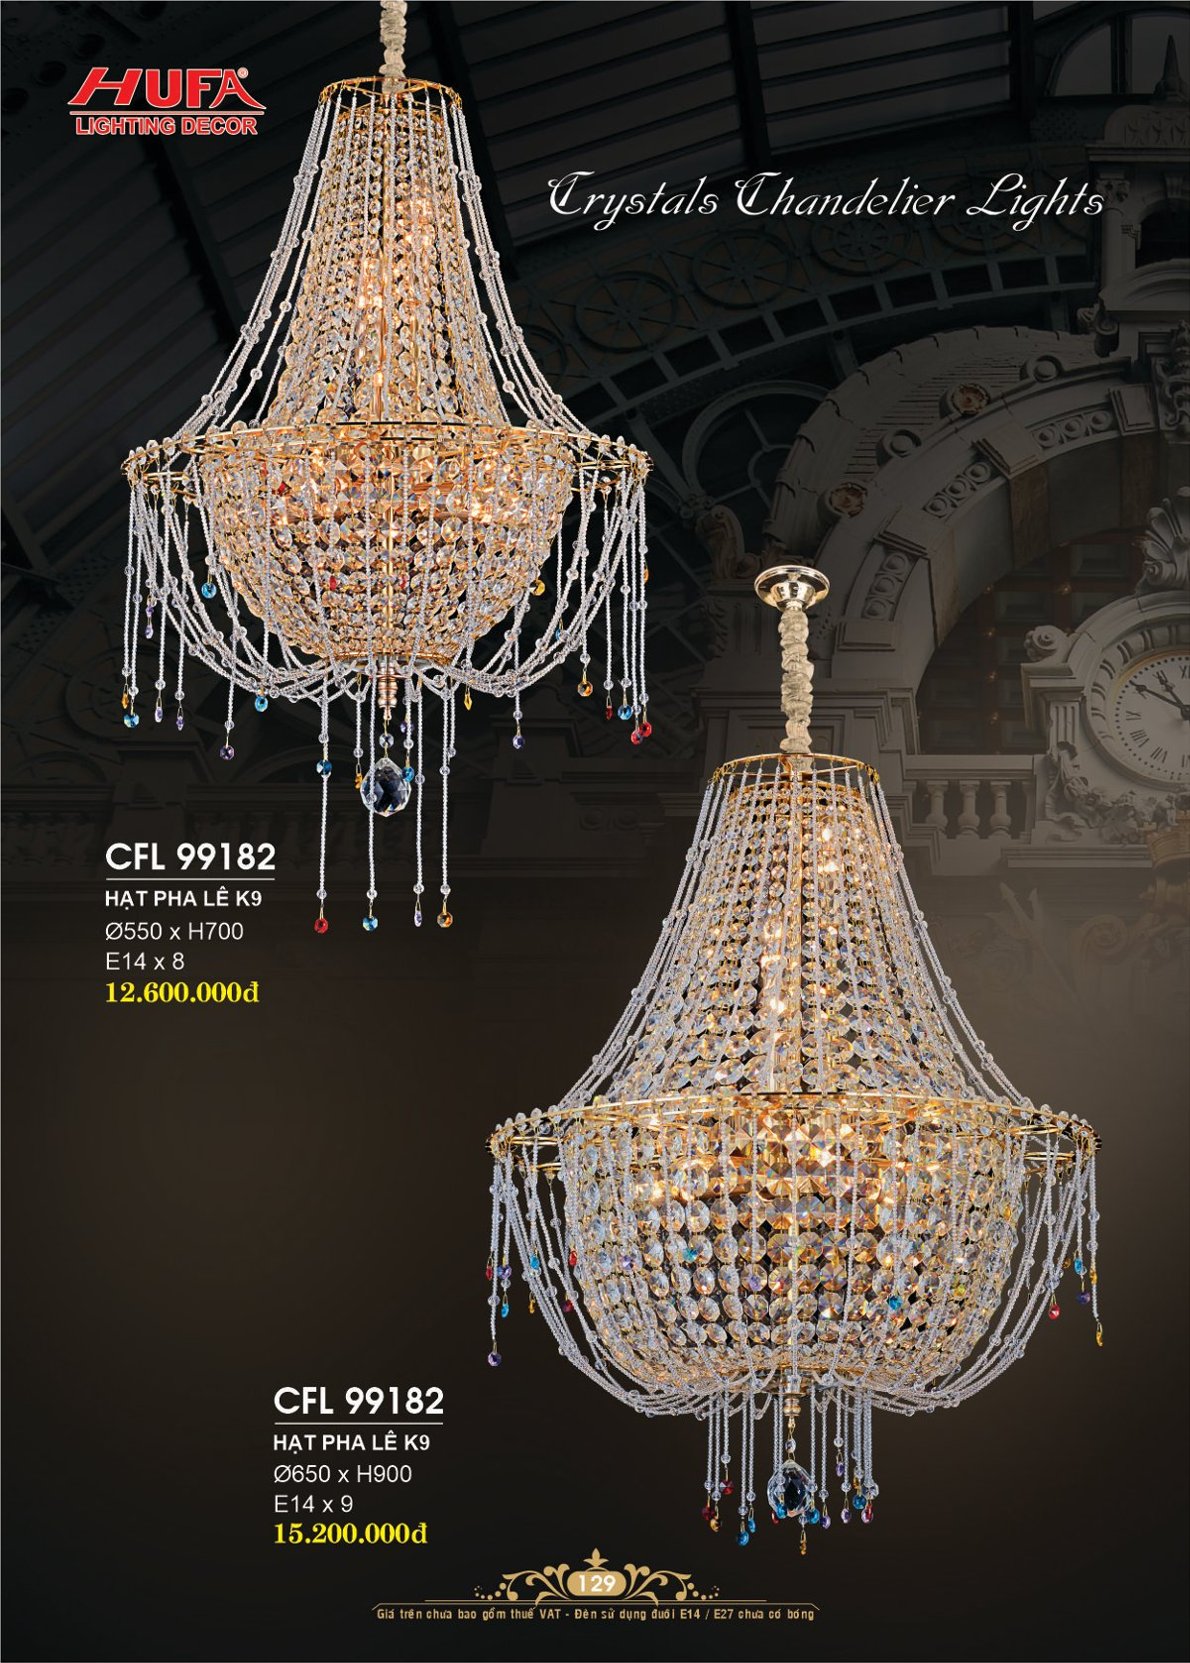 Đèn chùm pha lê, đèn trang trí Hufa CFL 1971 cao cấp giá rẻ bảo hành lâu dài, hỗ trợ lắp đặt, giao hàng toàn quốc. Đèn pha lê Hufa được bảo trì trọn đời